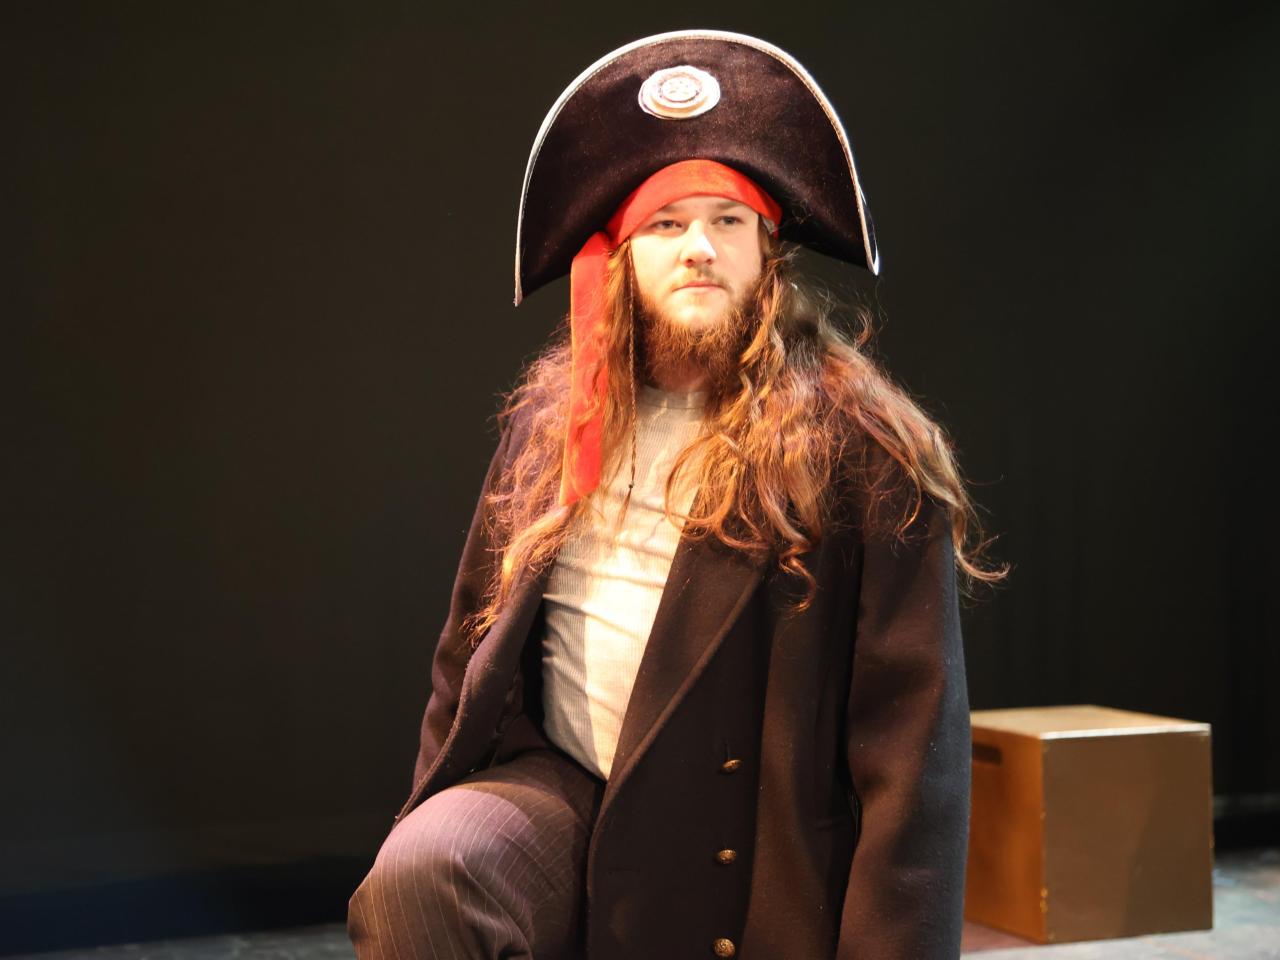 A man in a pirate hat